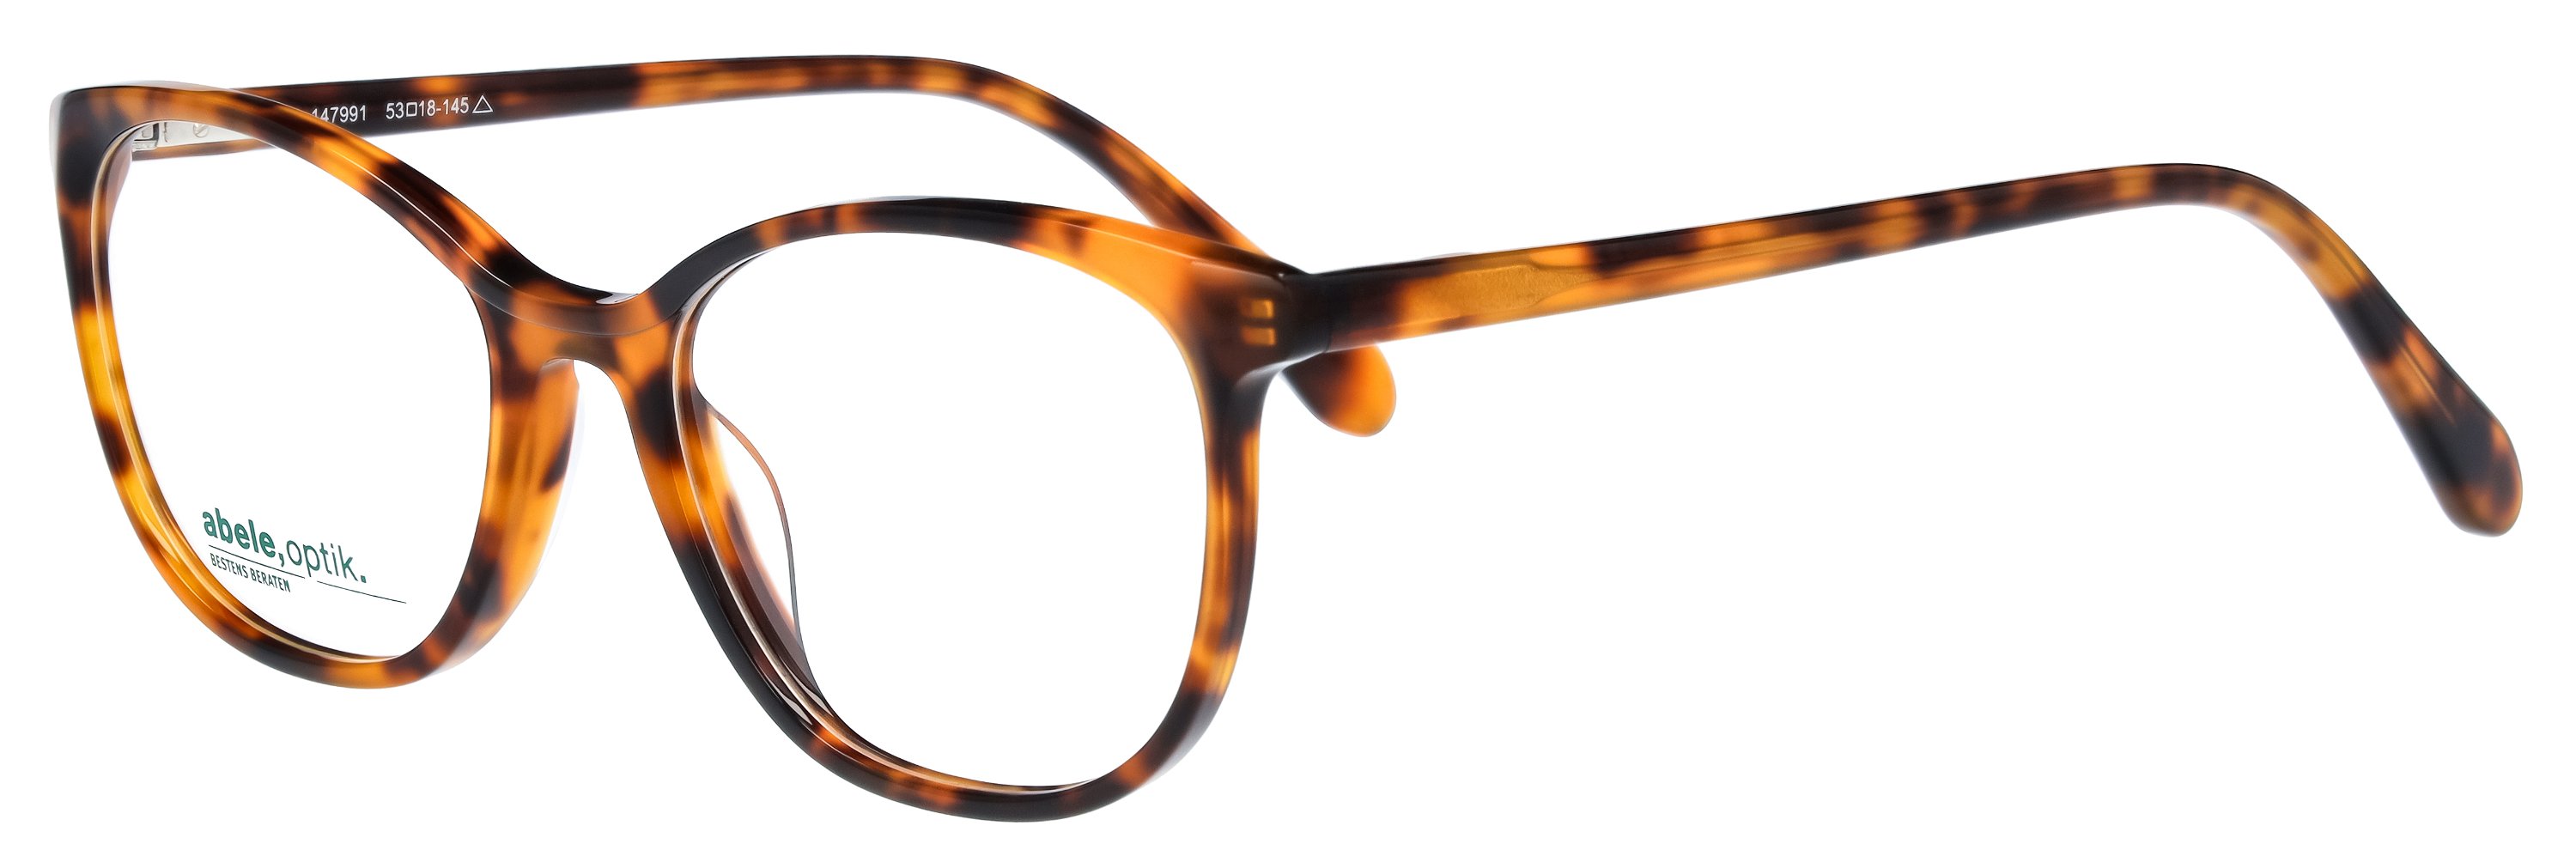 Das Bild zeigt die Korrektionsbrille 147991 von der Marke Abele Optik in havanna.